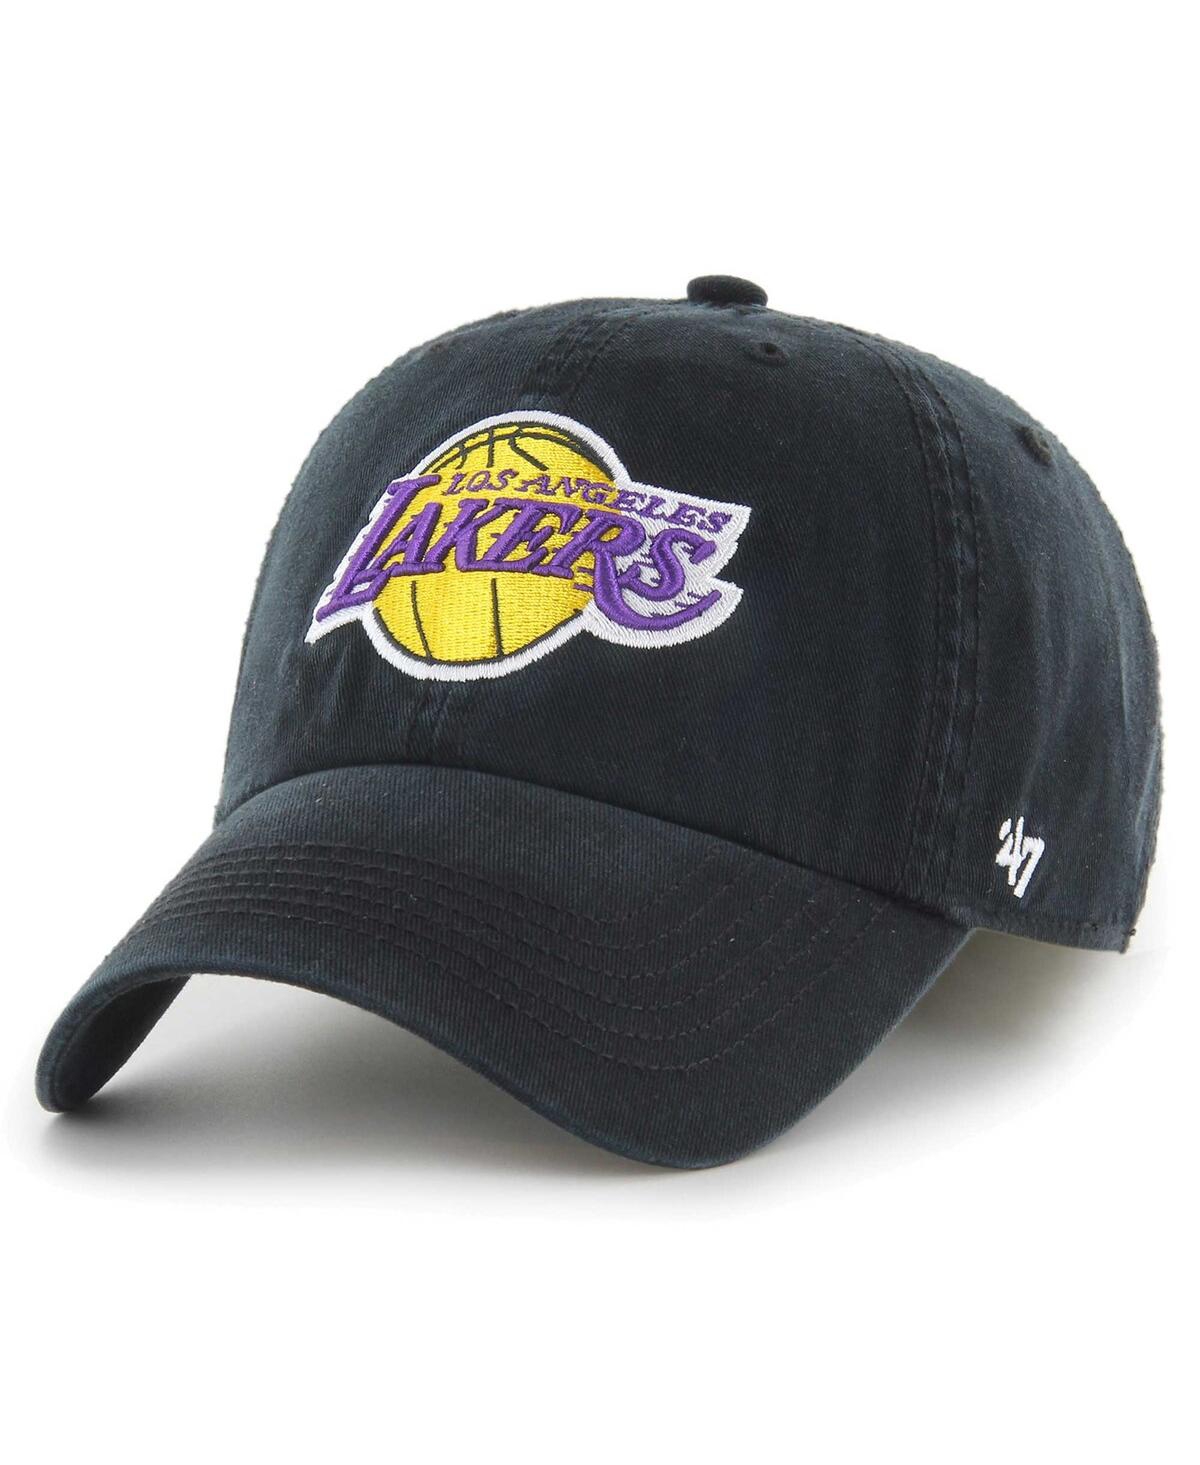 Men's '47 Brand Black Los Angeles Lakers Classic Franchise Flex Hat - Black